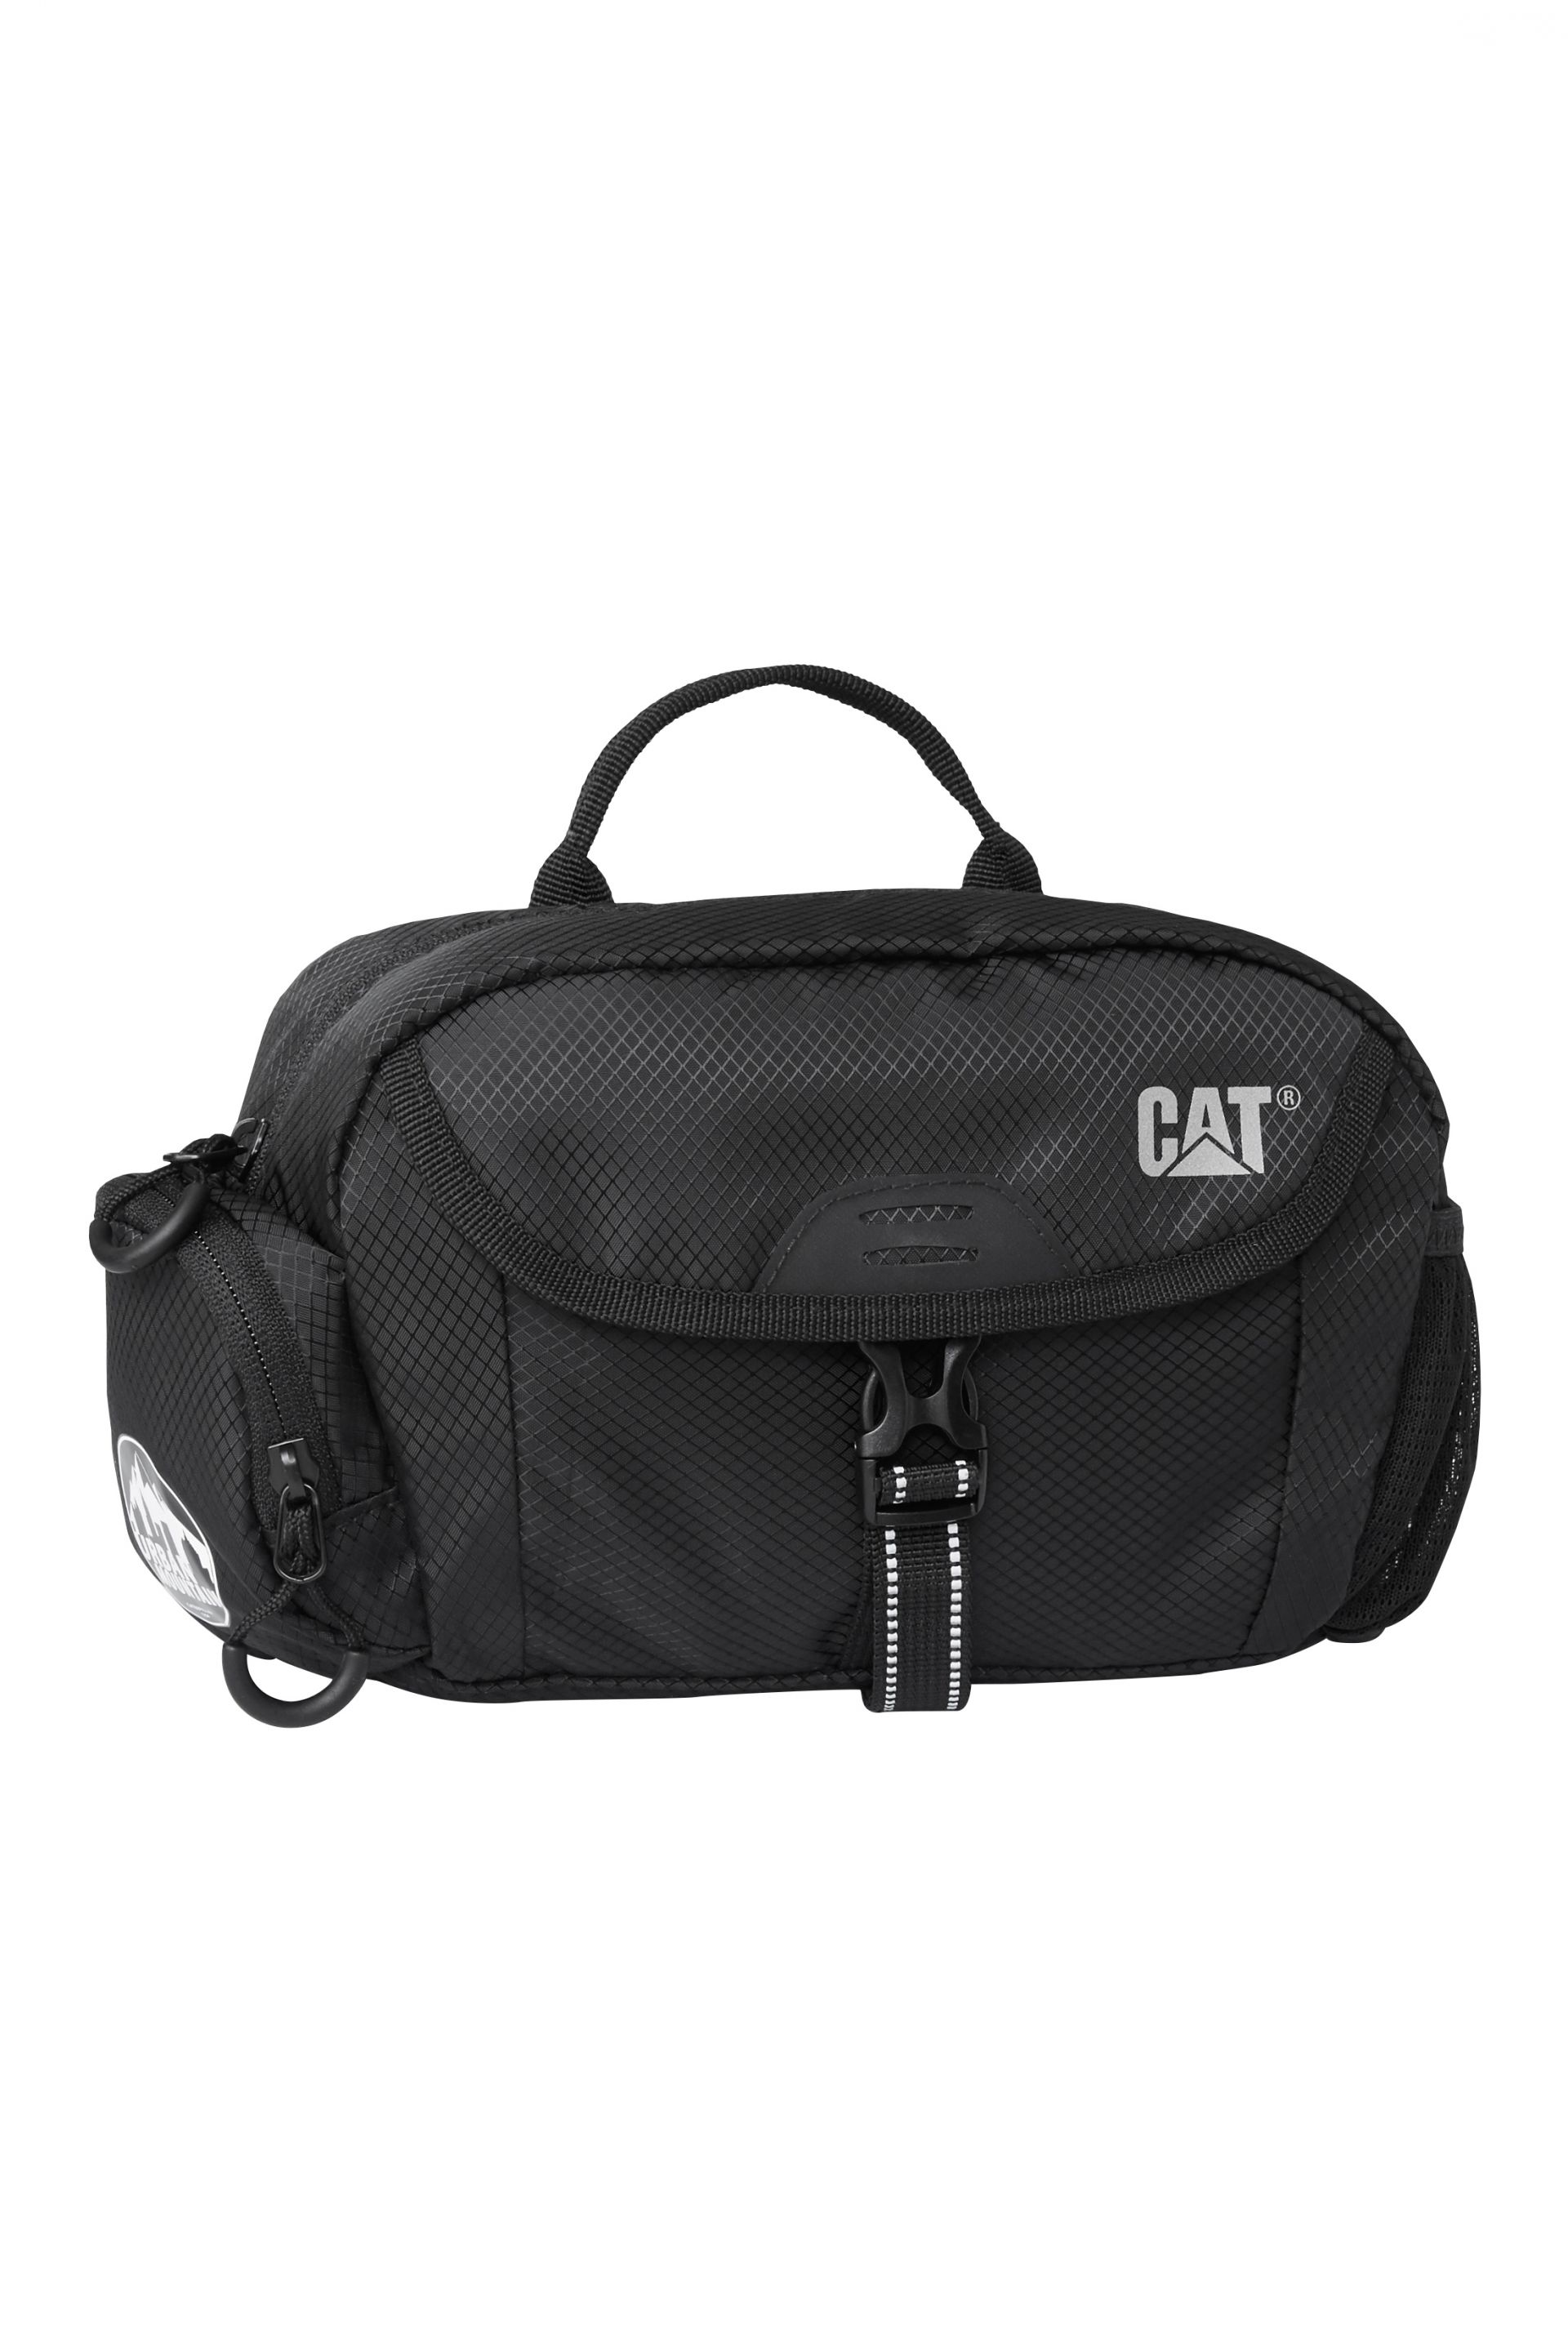 Belt bag CAT 83366-01